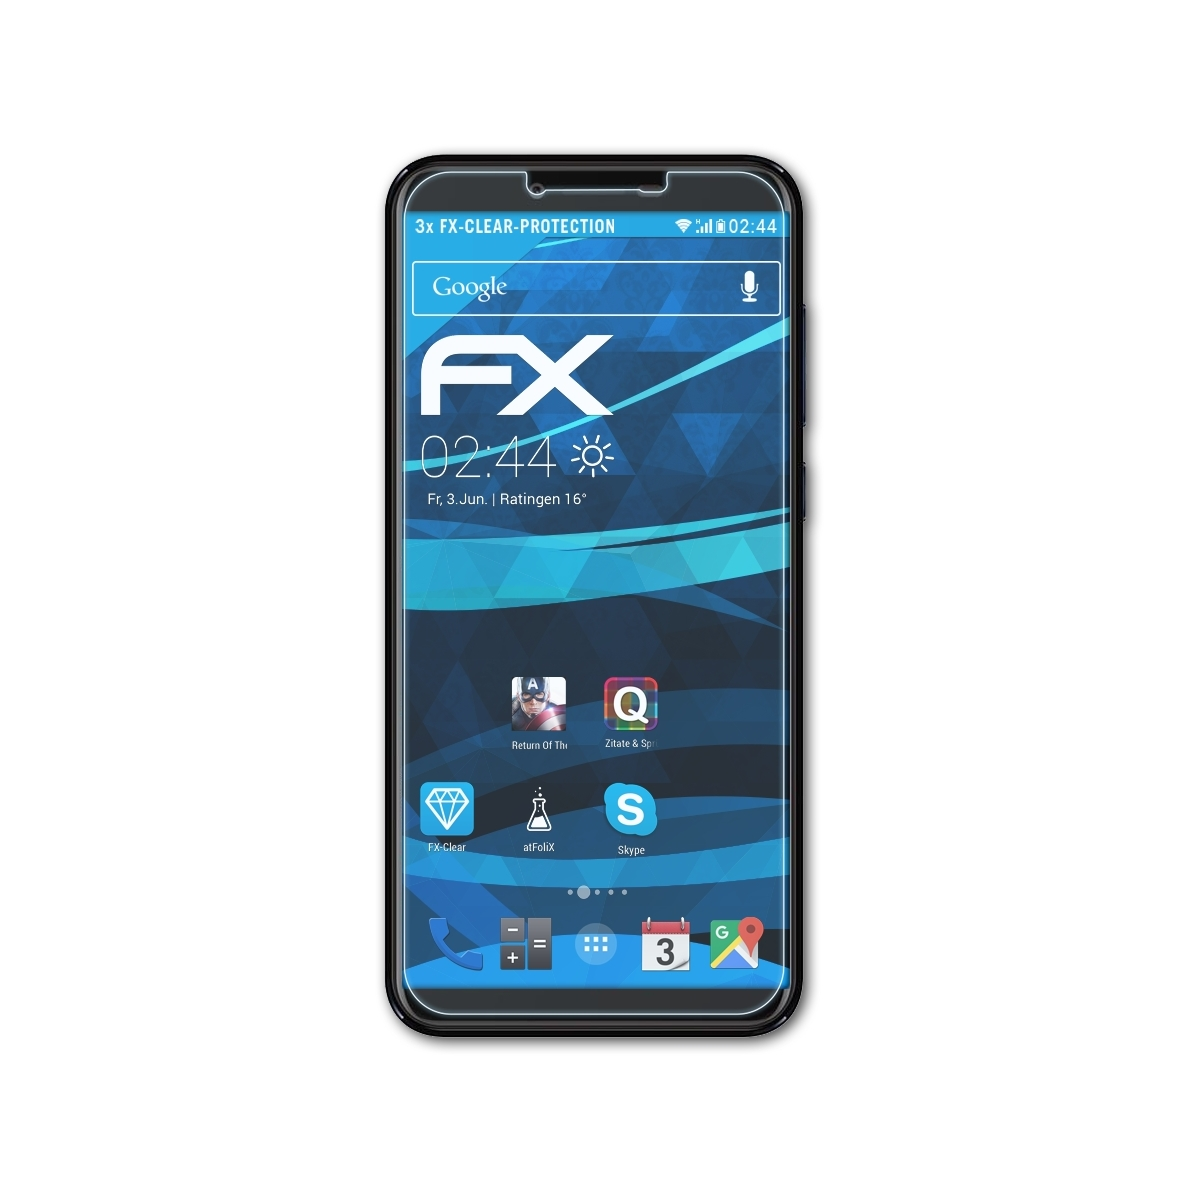 ATFOLIX 3x FX-Clear Displayschutz(für myPhone City 2)